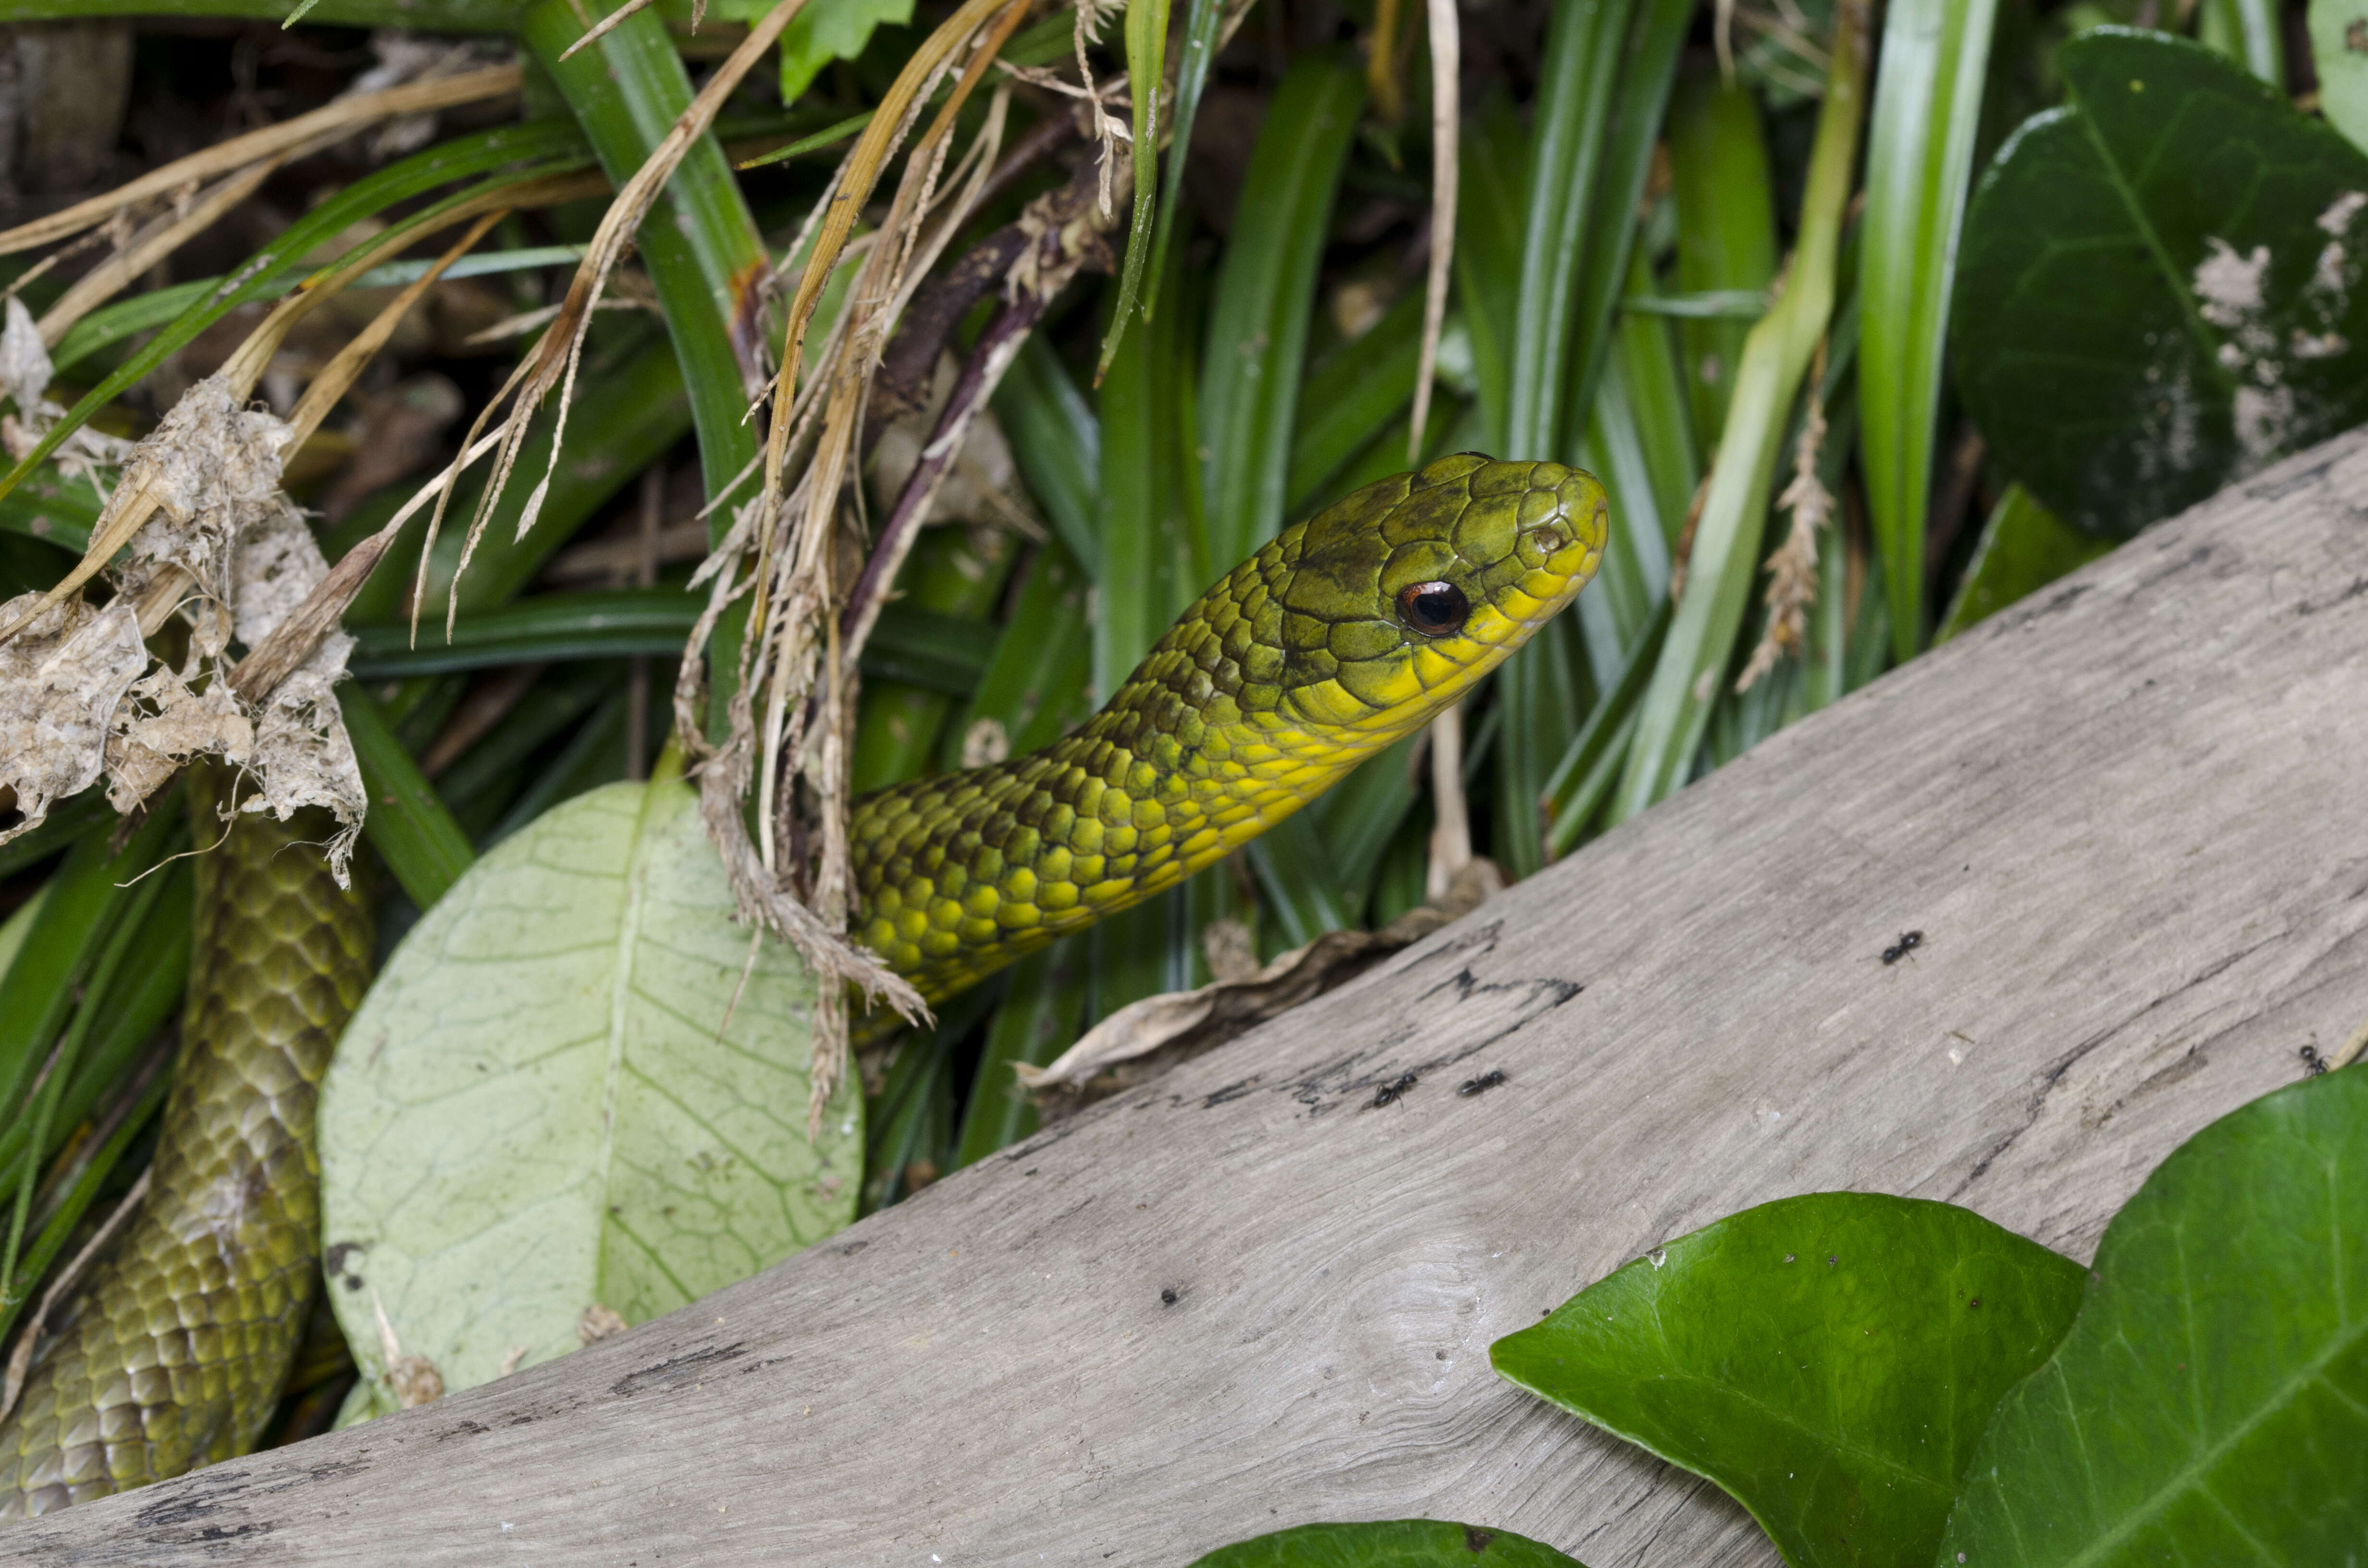 reptiles green snakes